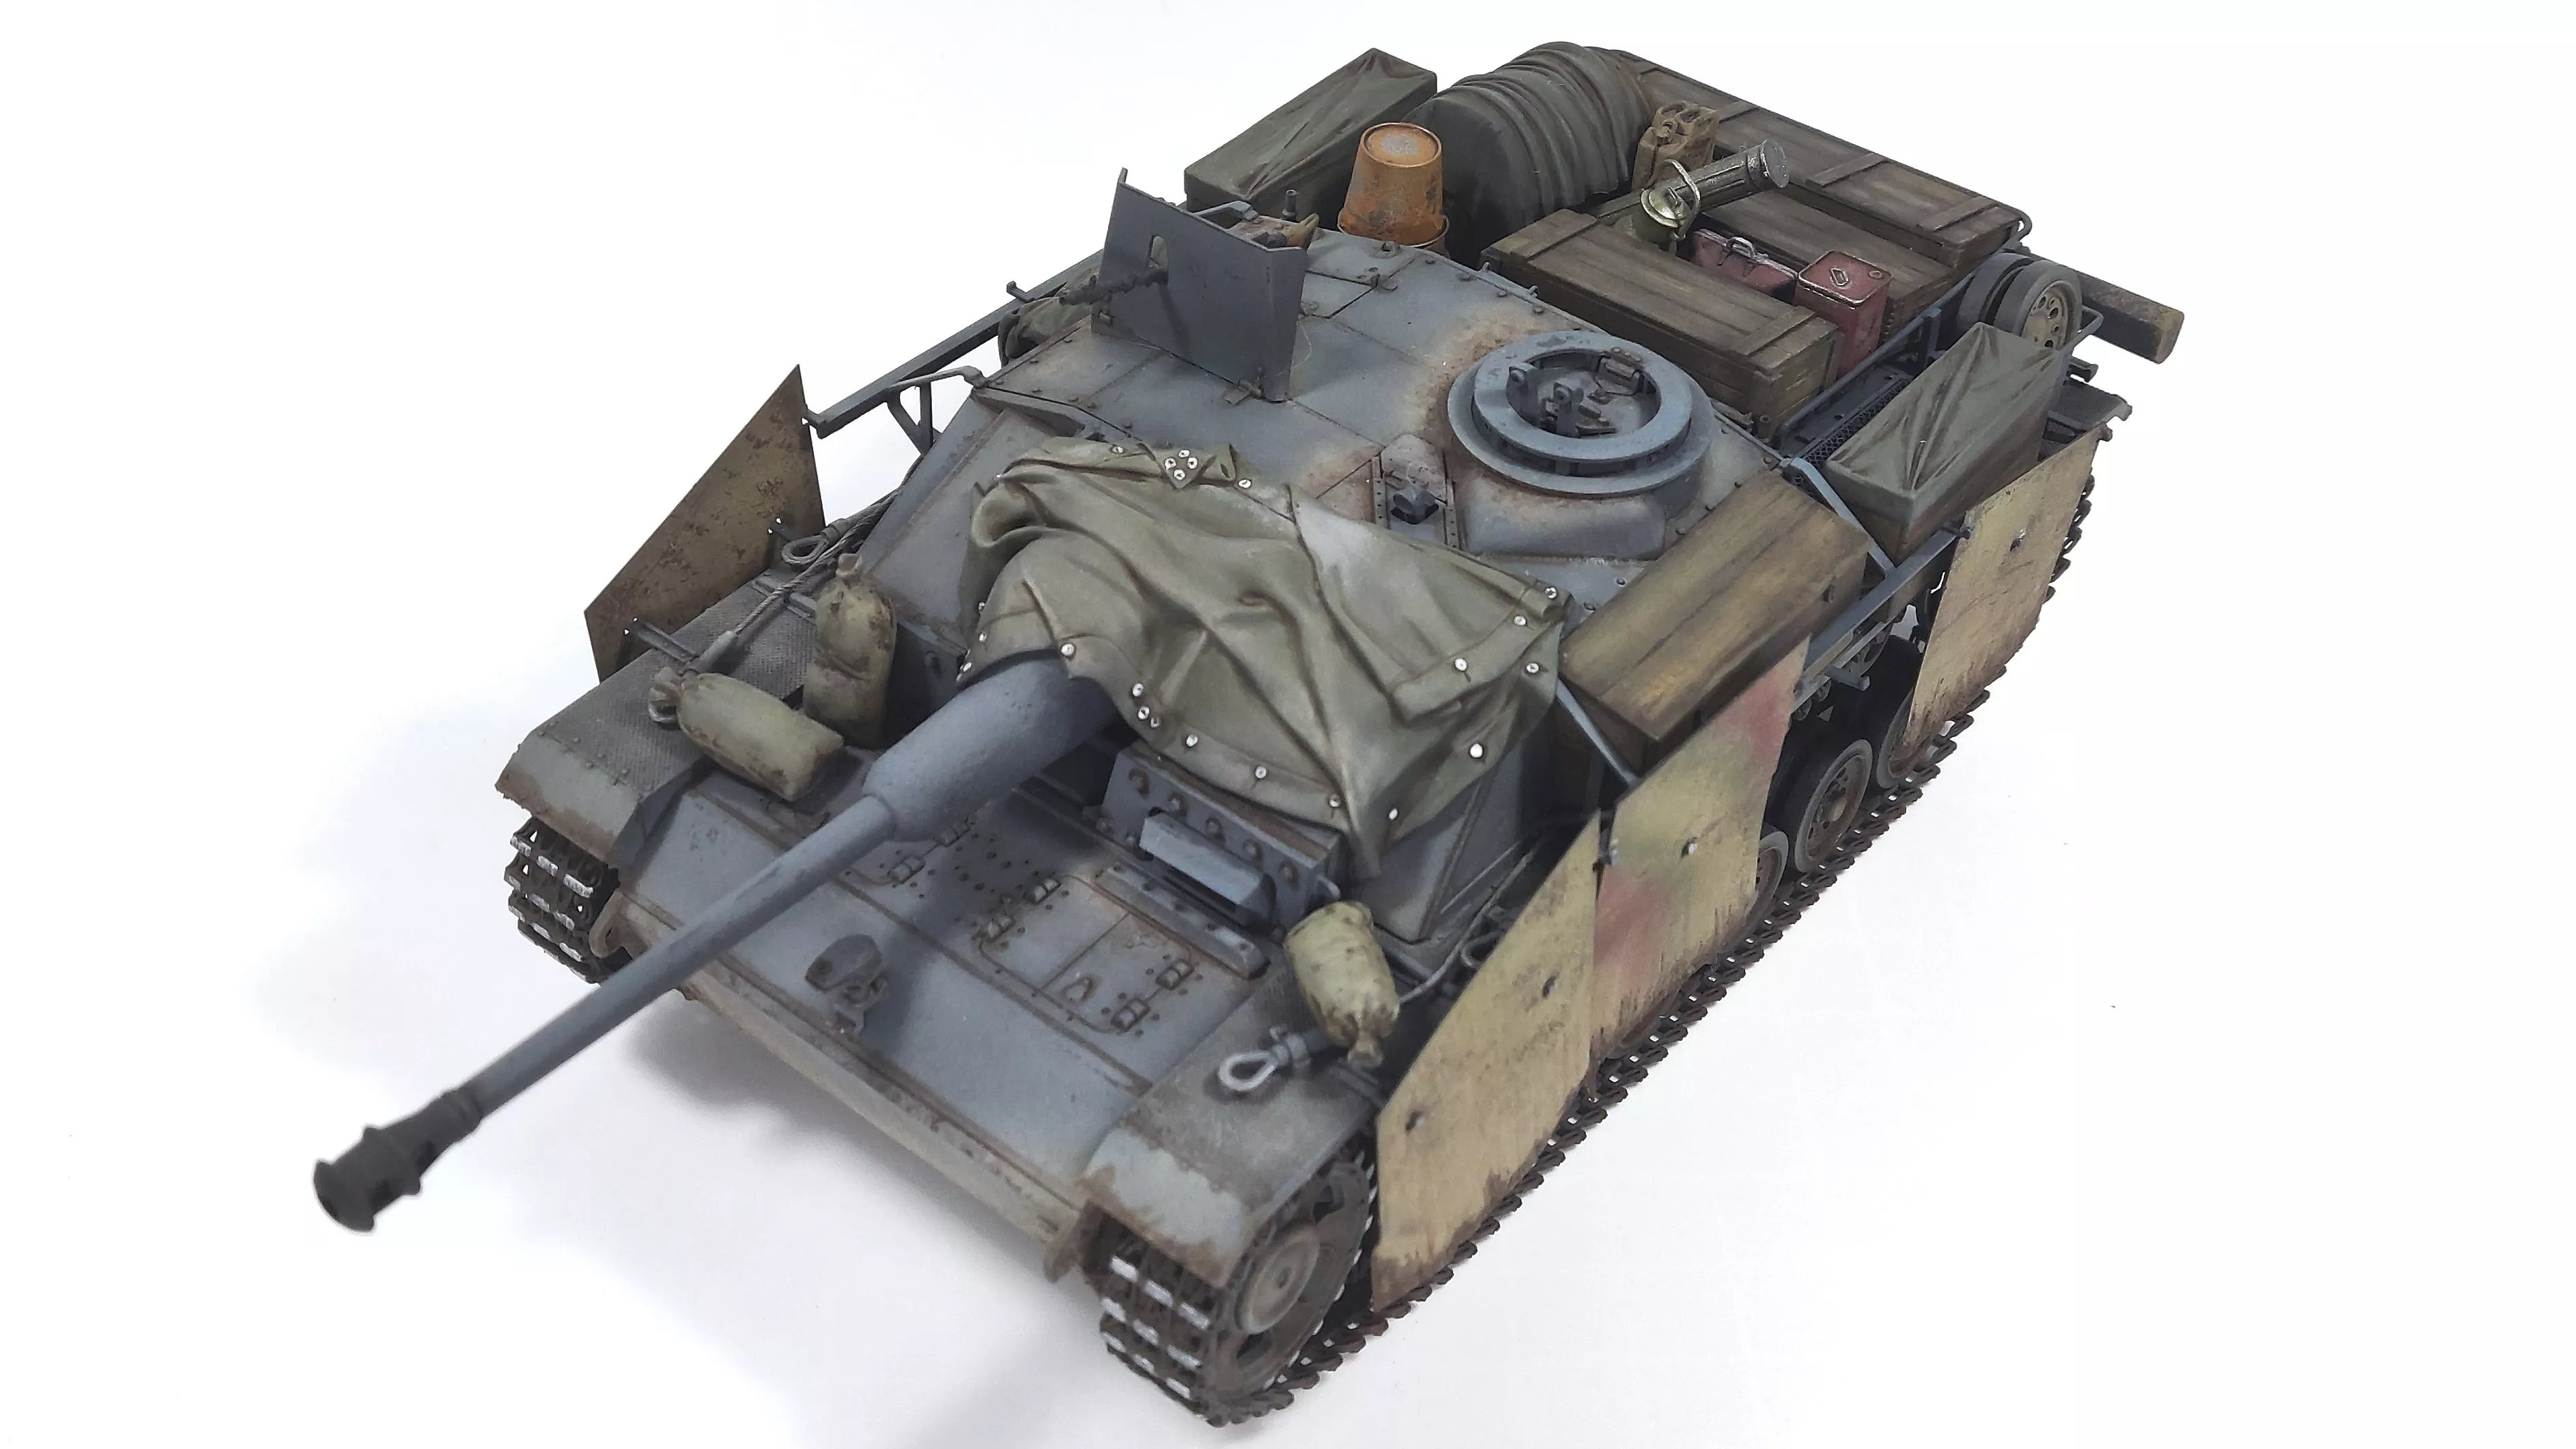 StuH42&StuG III Ausf.G Mid Prodution 2 in 1